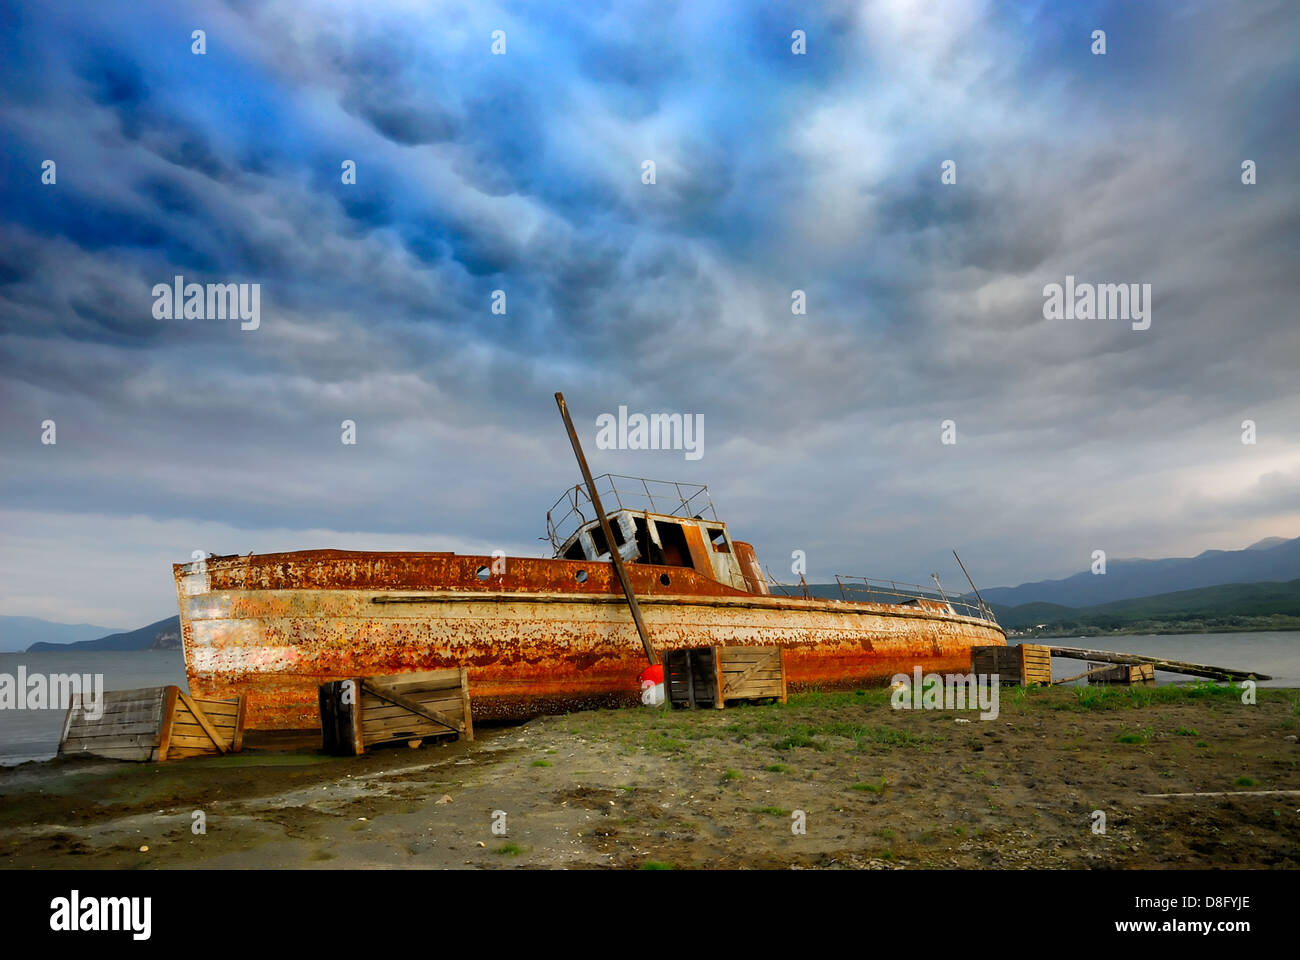 Abandoned boat at Prespa lake, Macedonia Stock Photo